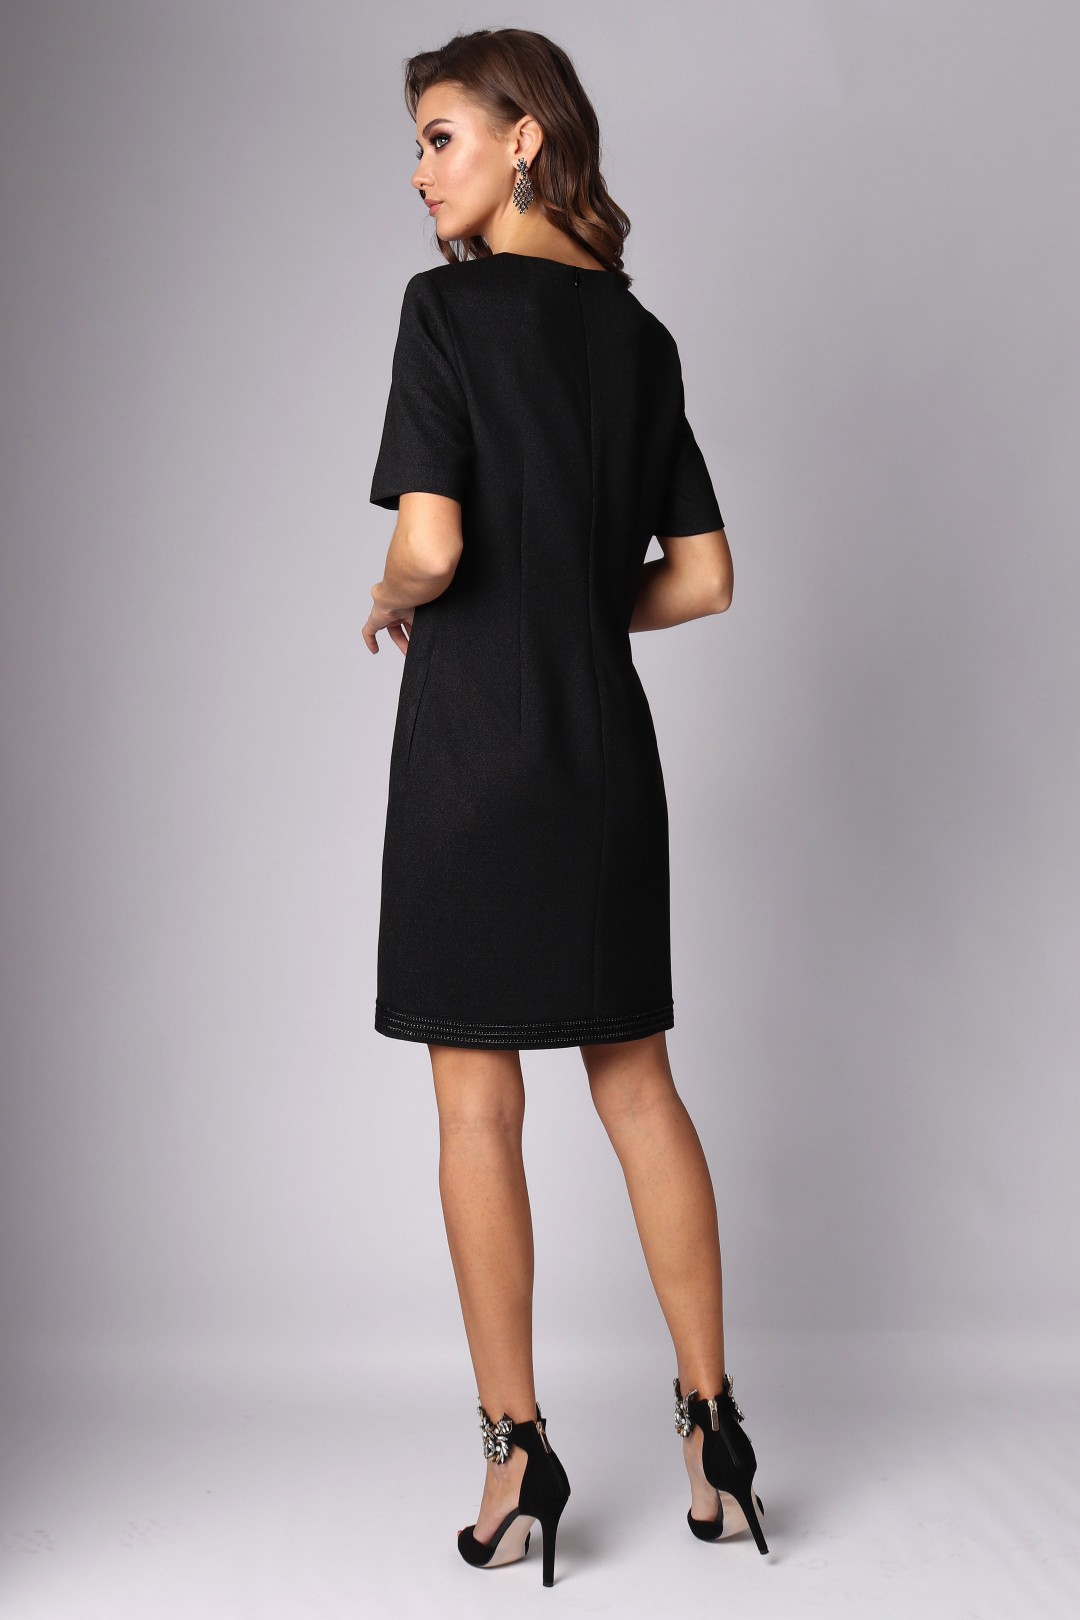 Платье МиА-Мода 1200-2 черный